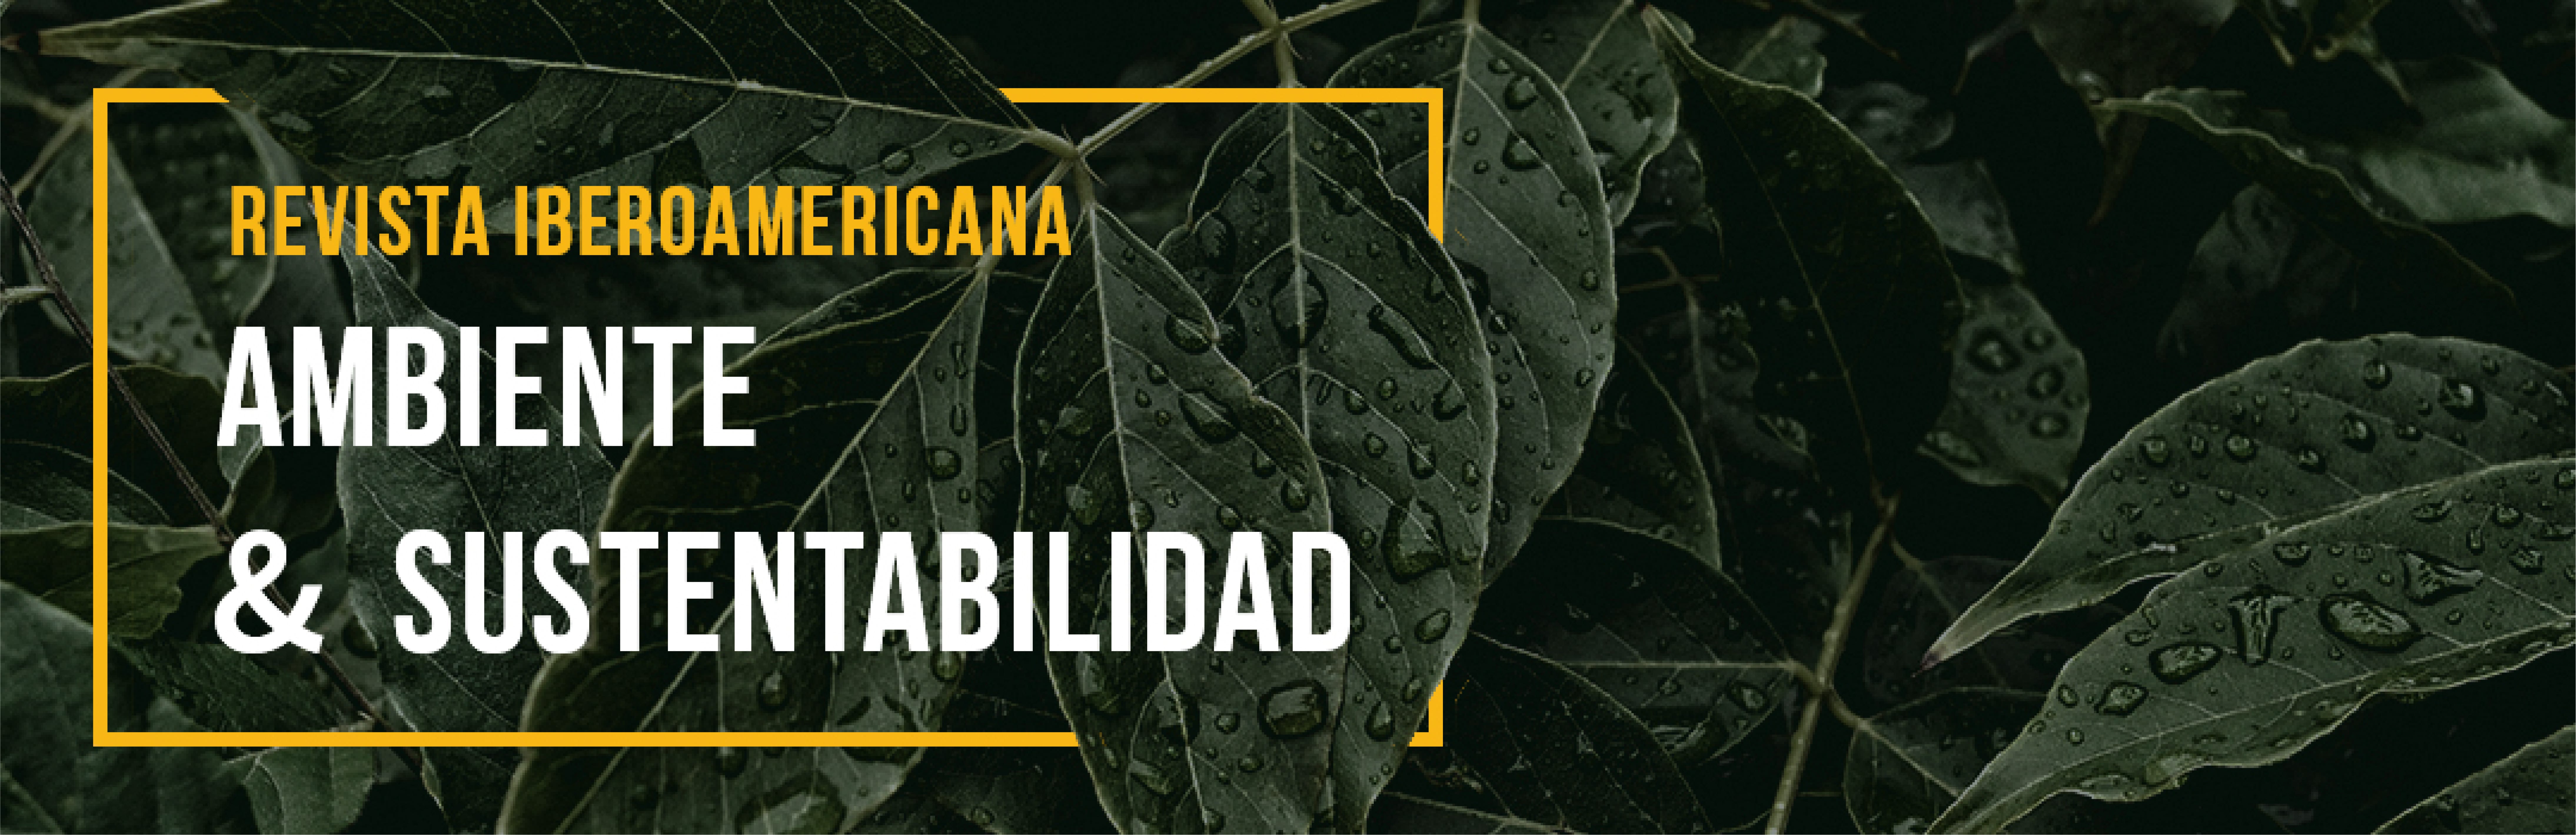 Miniatura Revista Iberoamericana Ambiente & Sustentabilidad